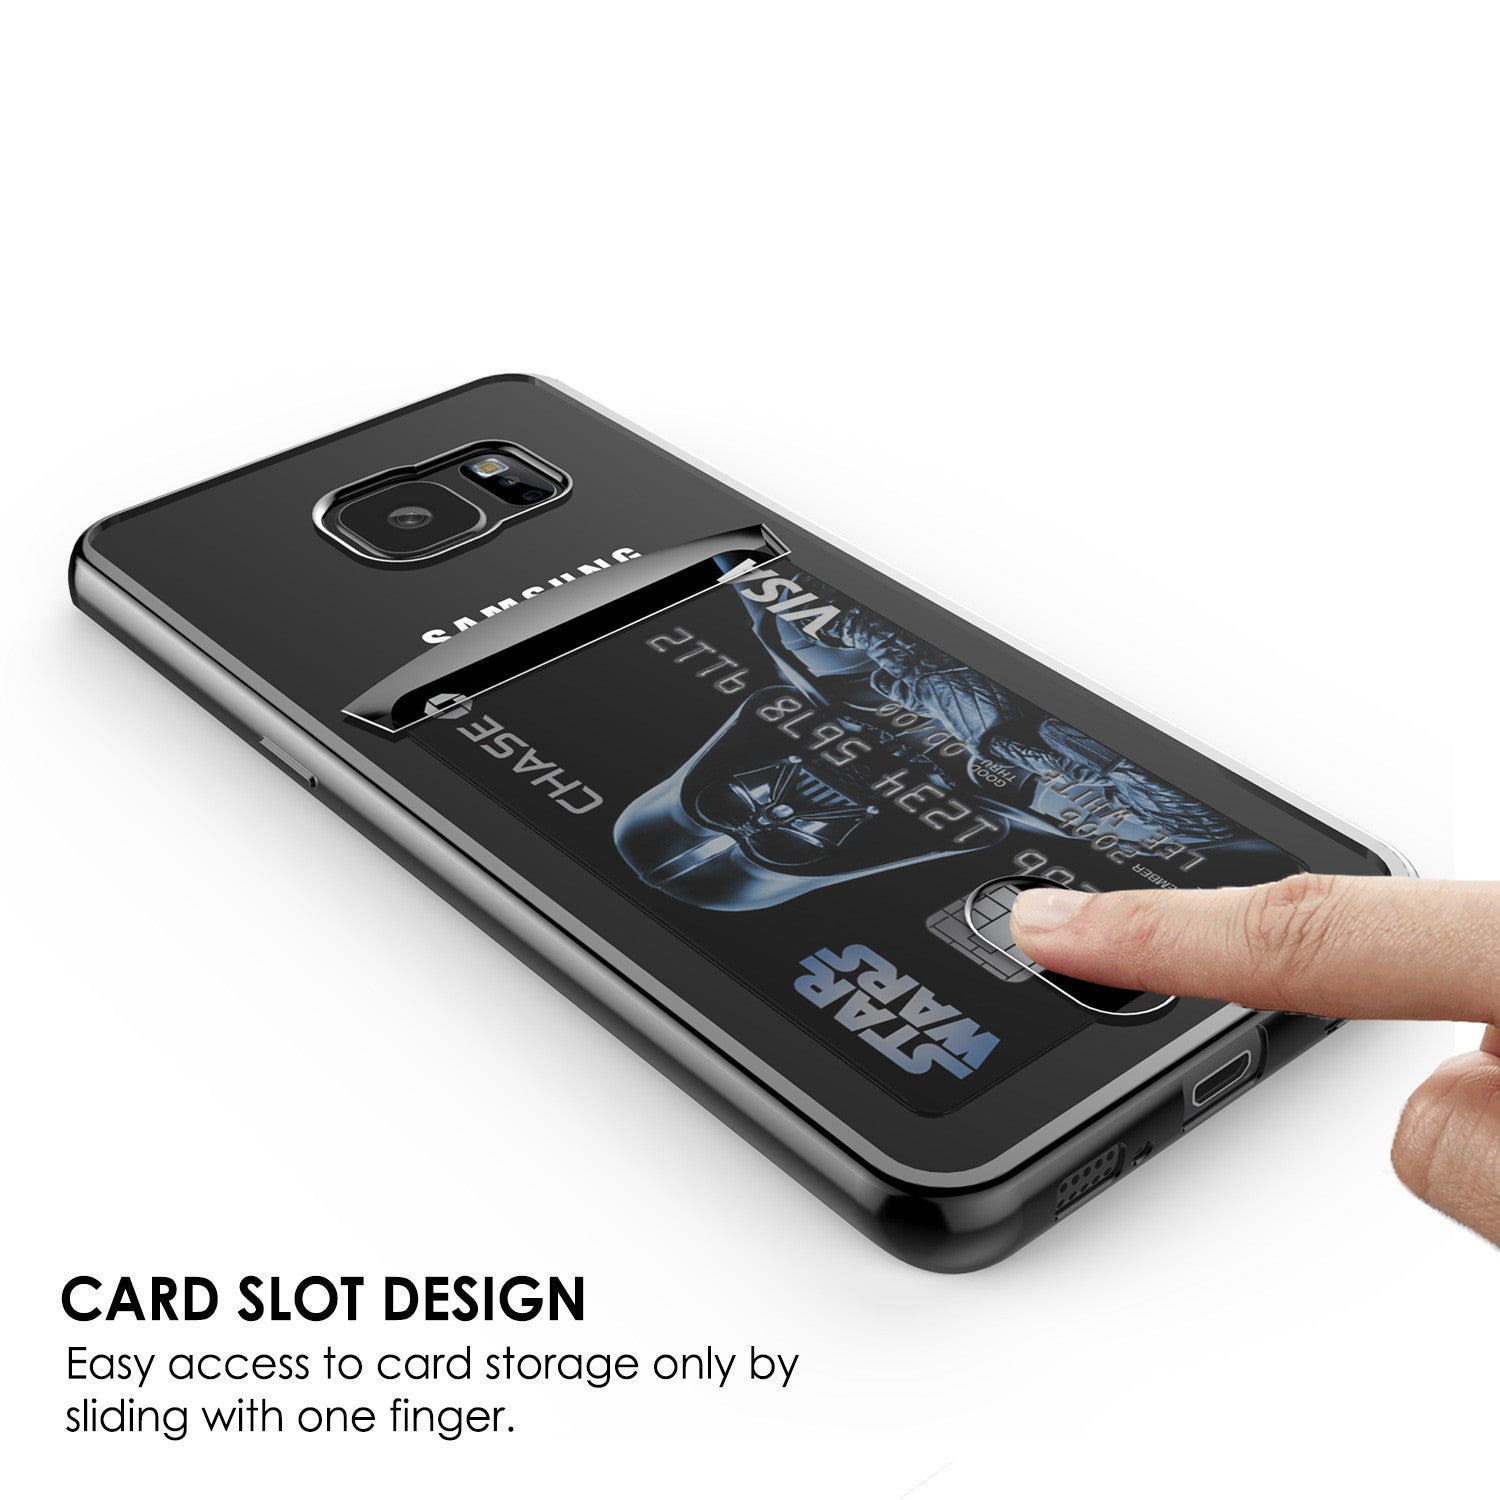 PUNKCASE - Lucid Series Premium Impact Case for Samsung S7 Edge | Black